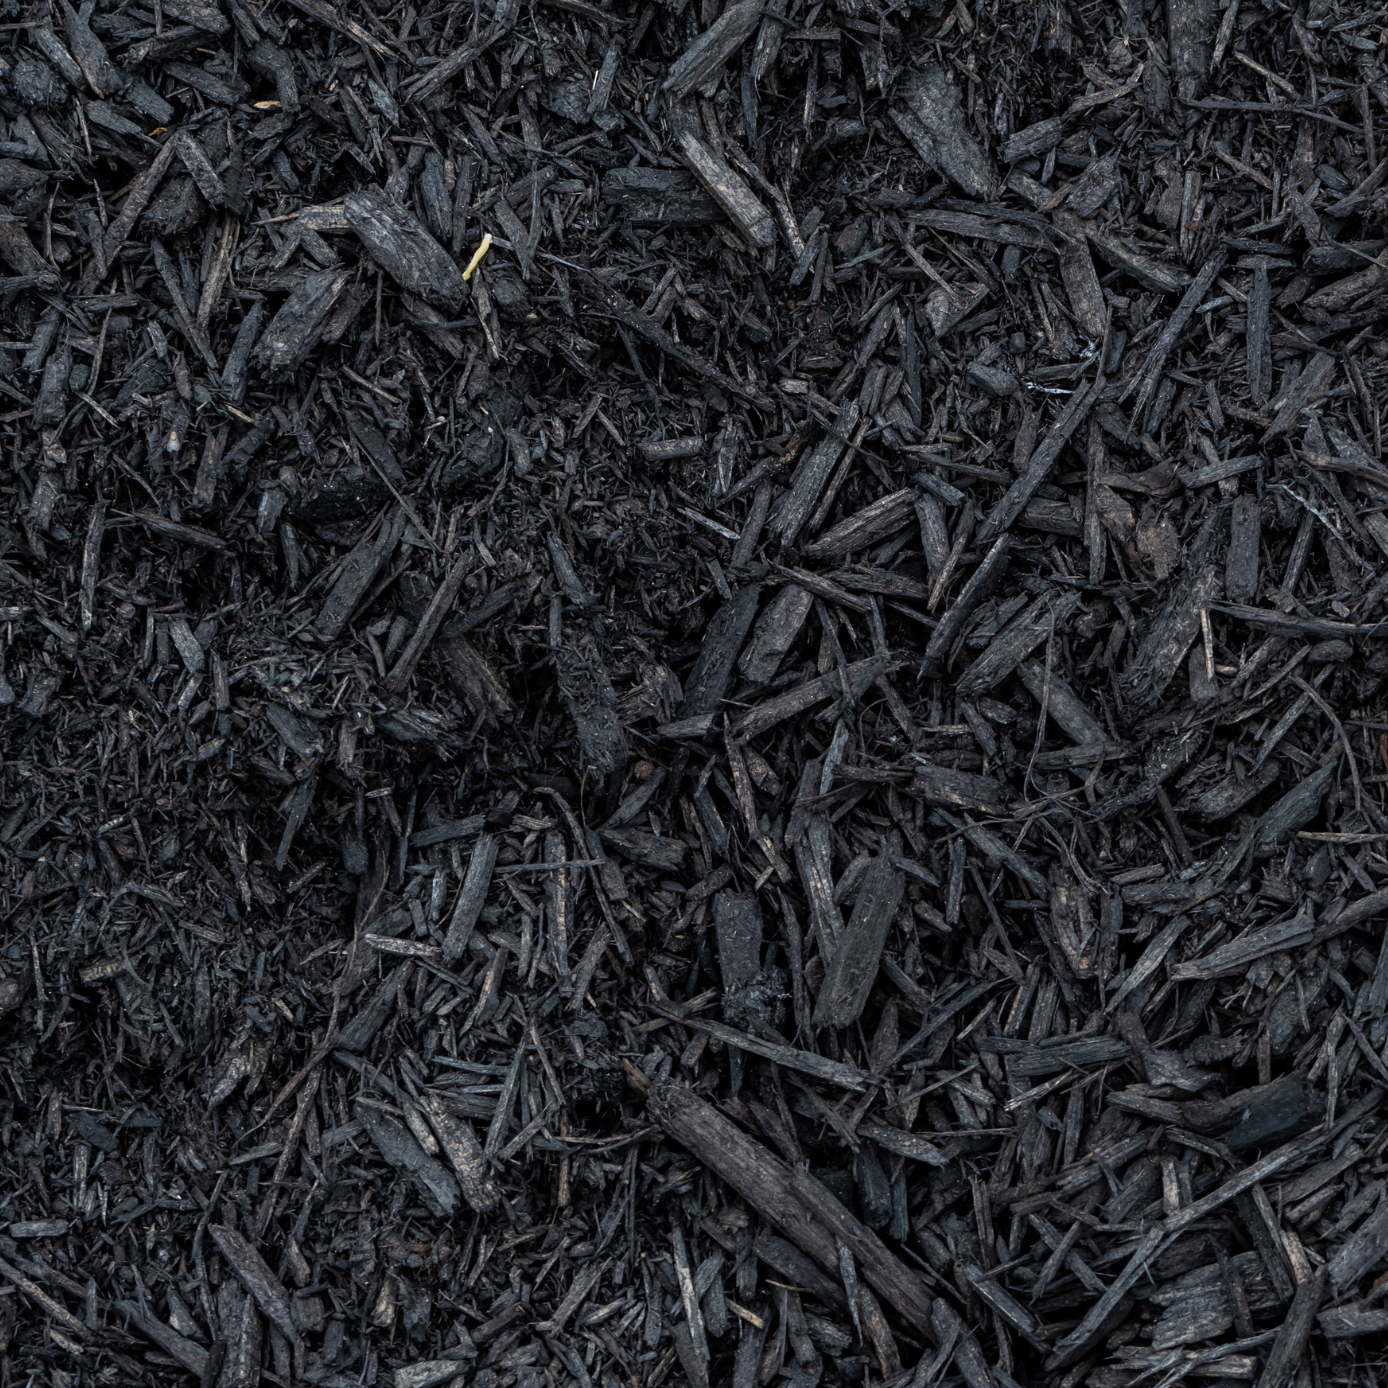 Rebark - Black Mulch Dye*